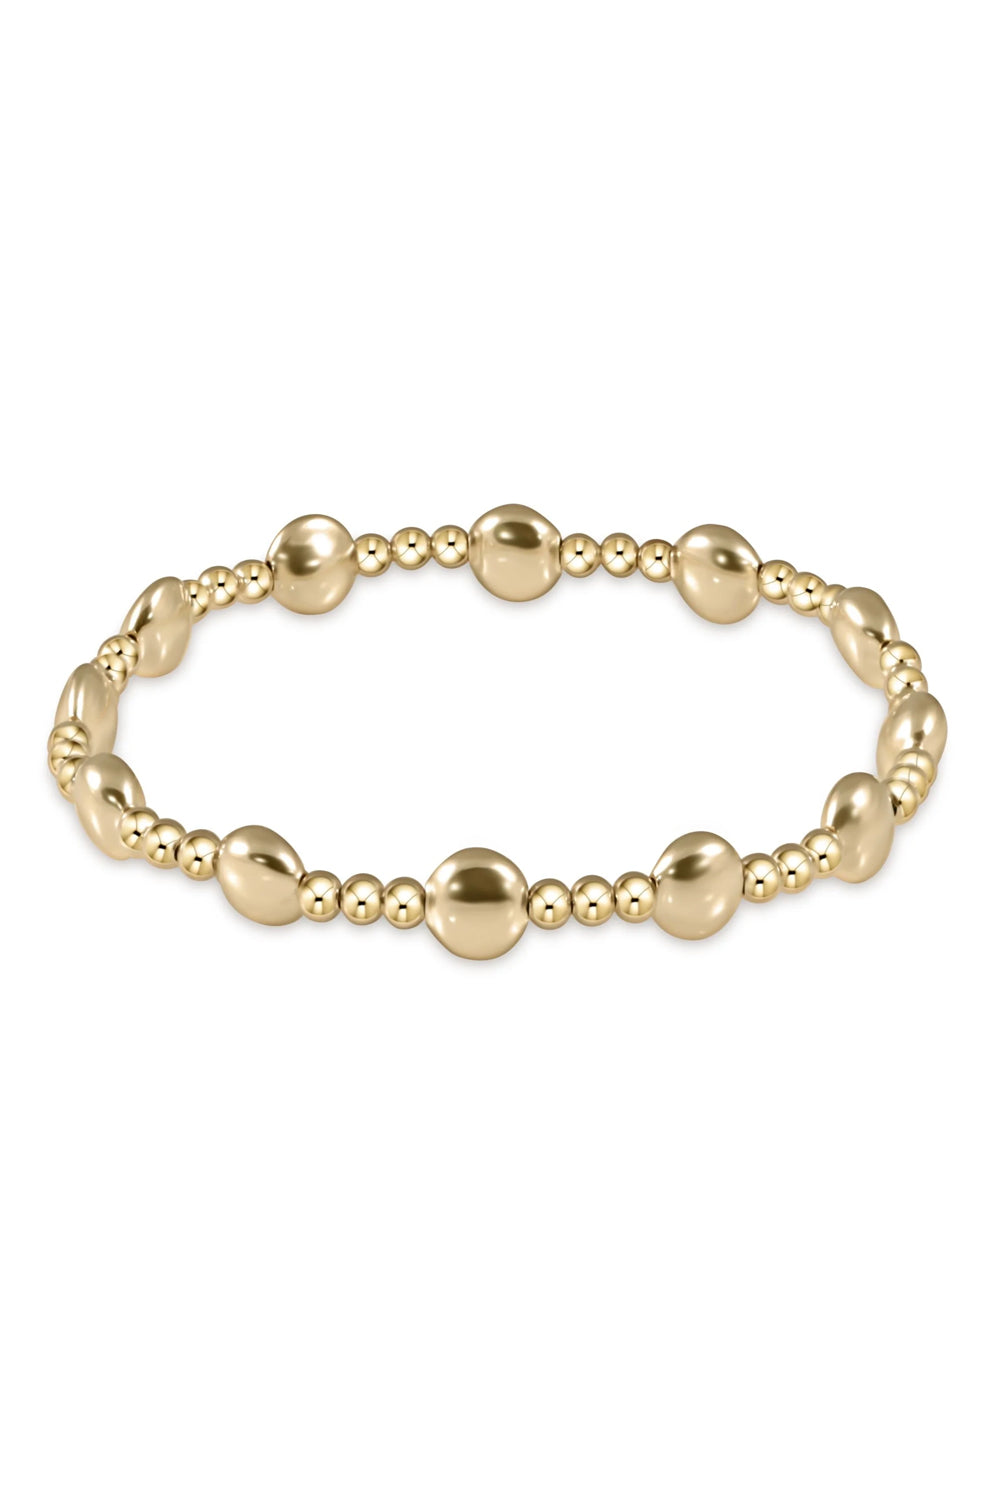 enewton: Honesty Gold Sincerity Pattern 6mm Bead Bracelet - Gold | Makk Fashions